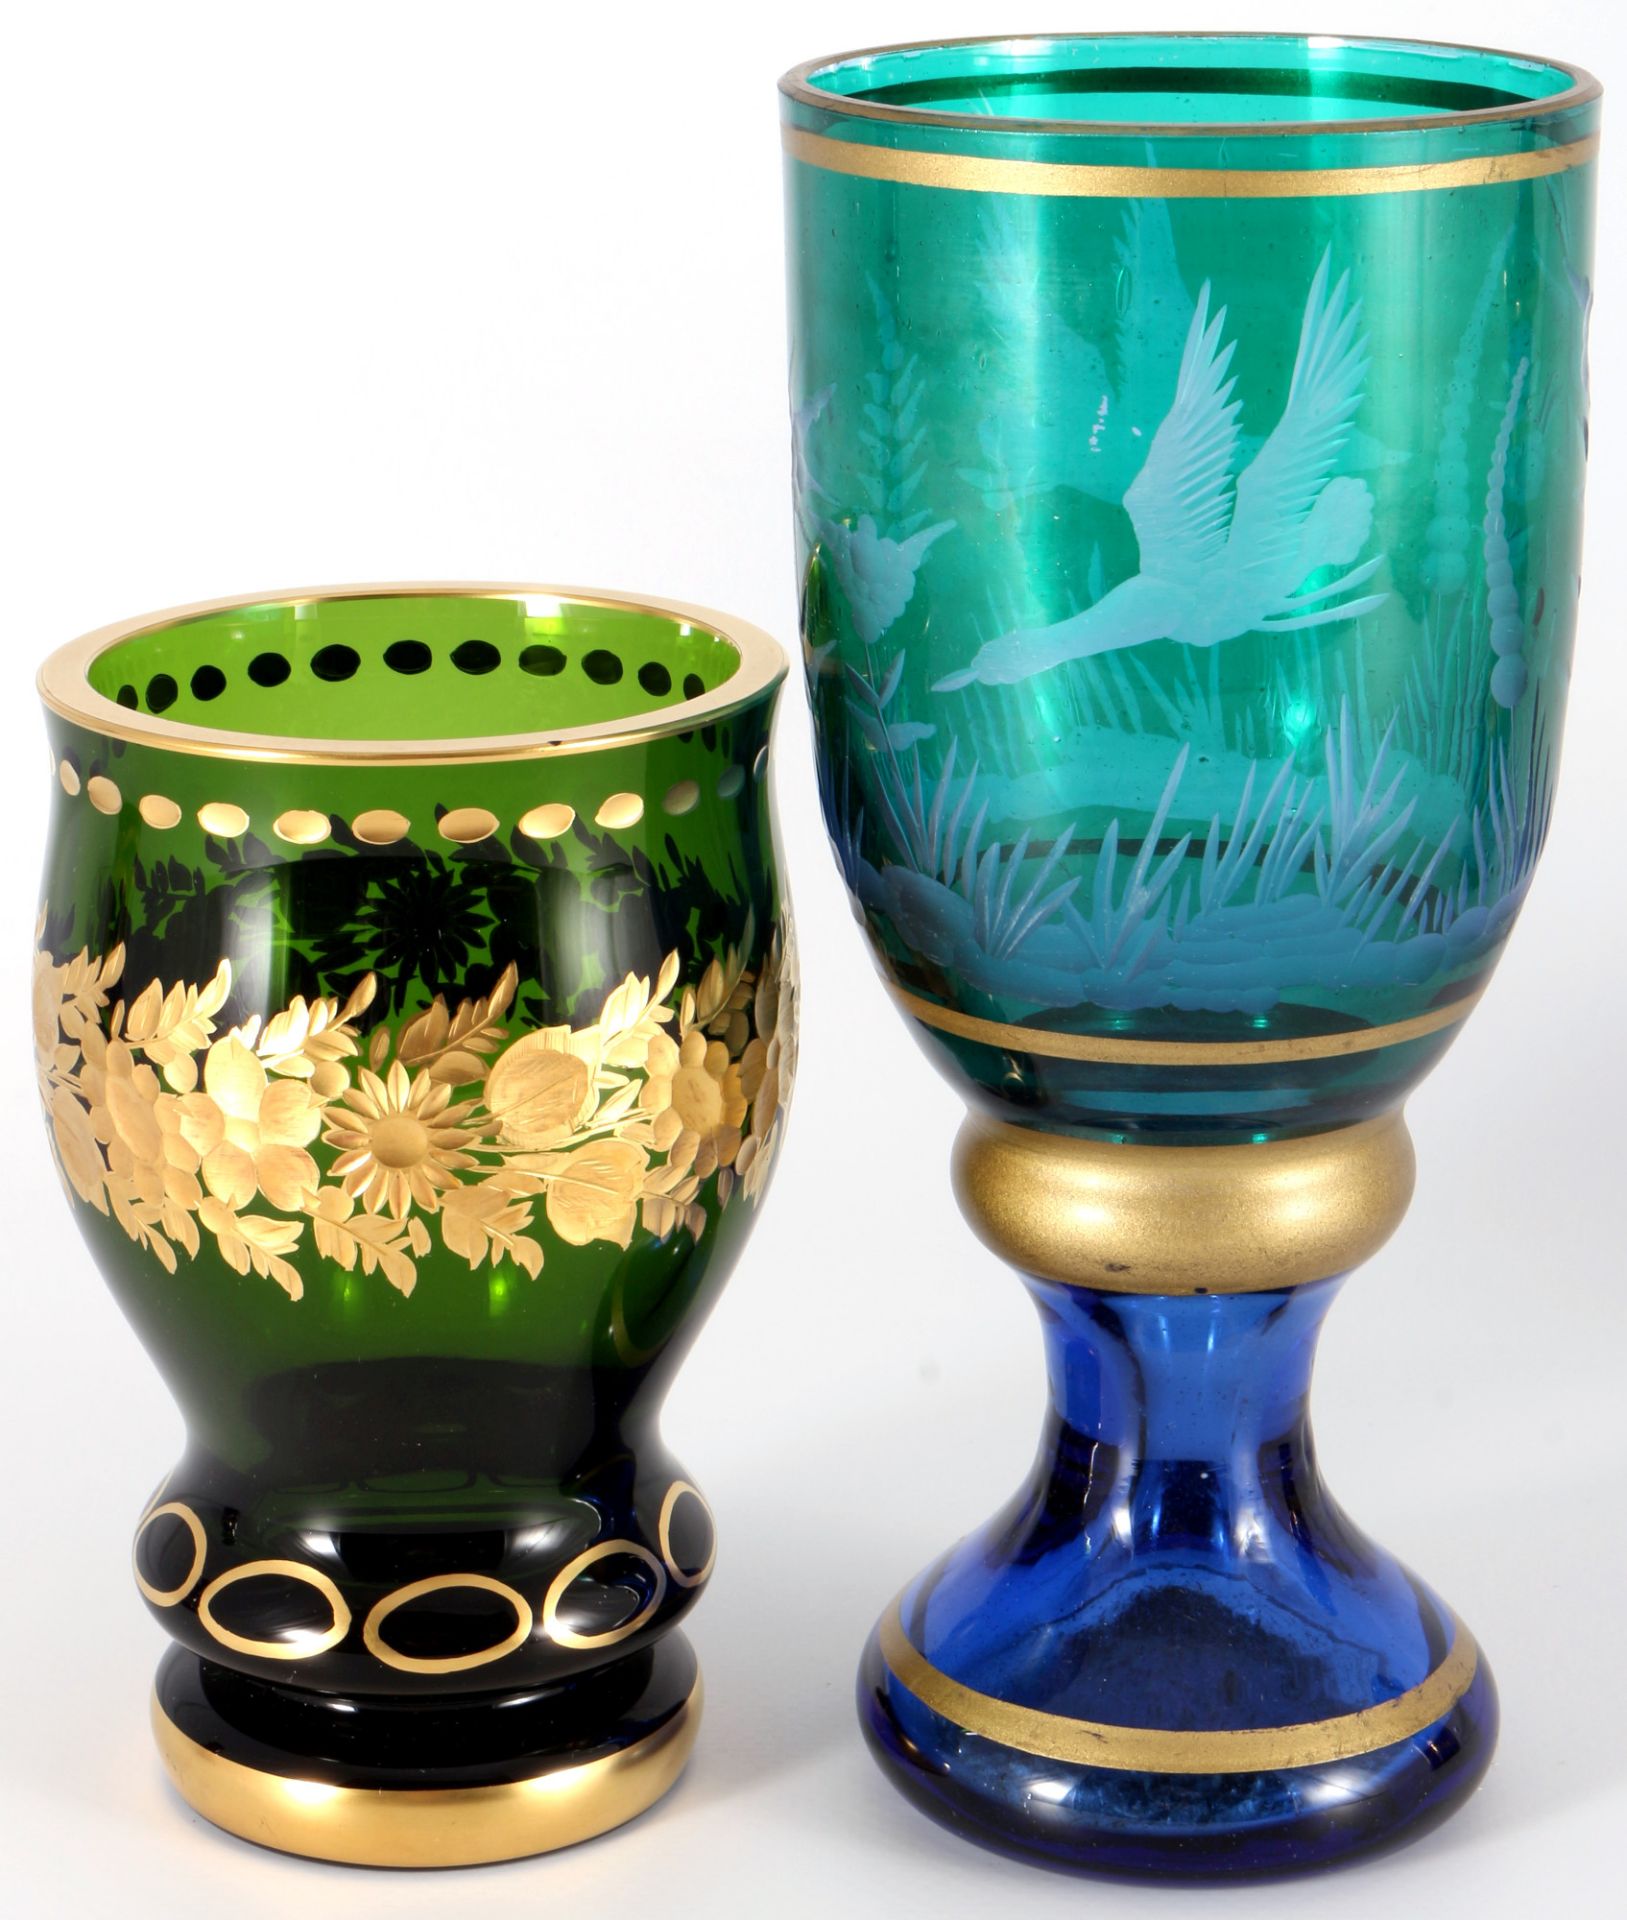 6 goblets / chalices, Gläser / Pokale, - Image 3 of 5